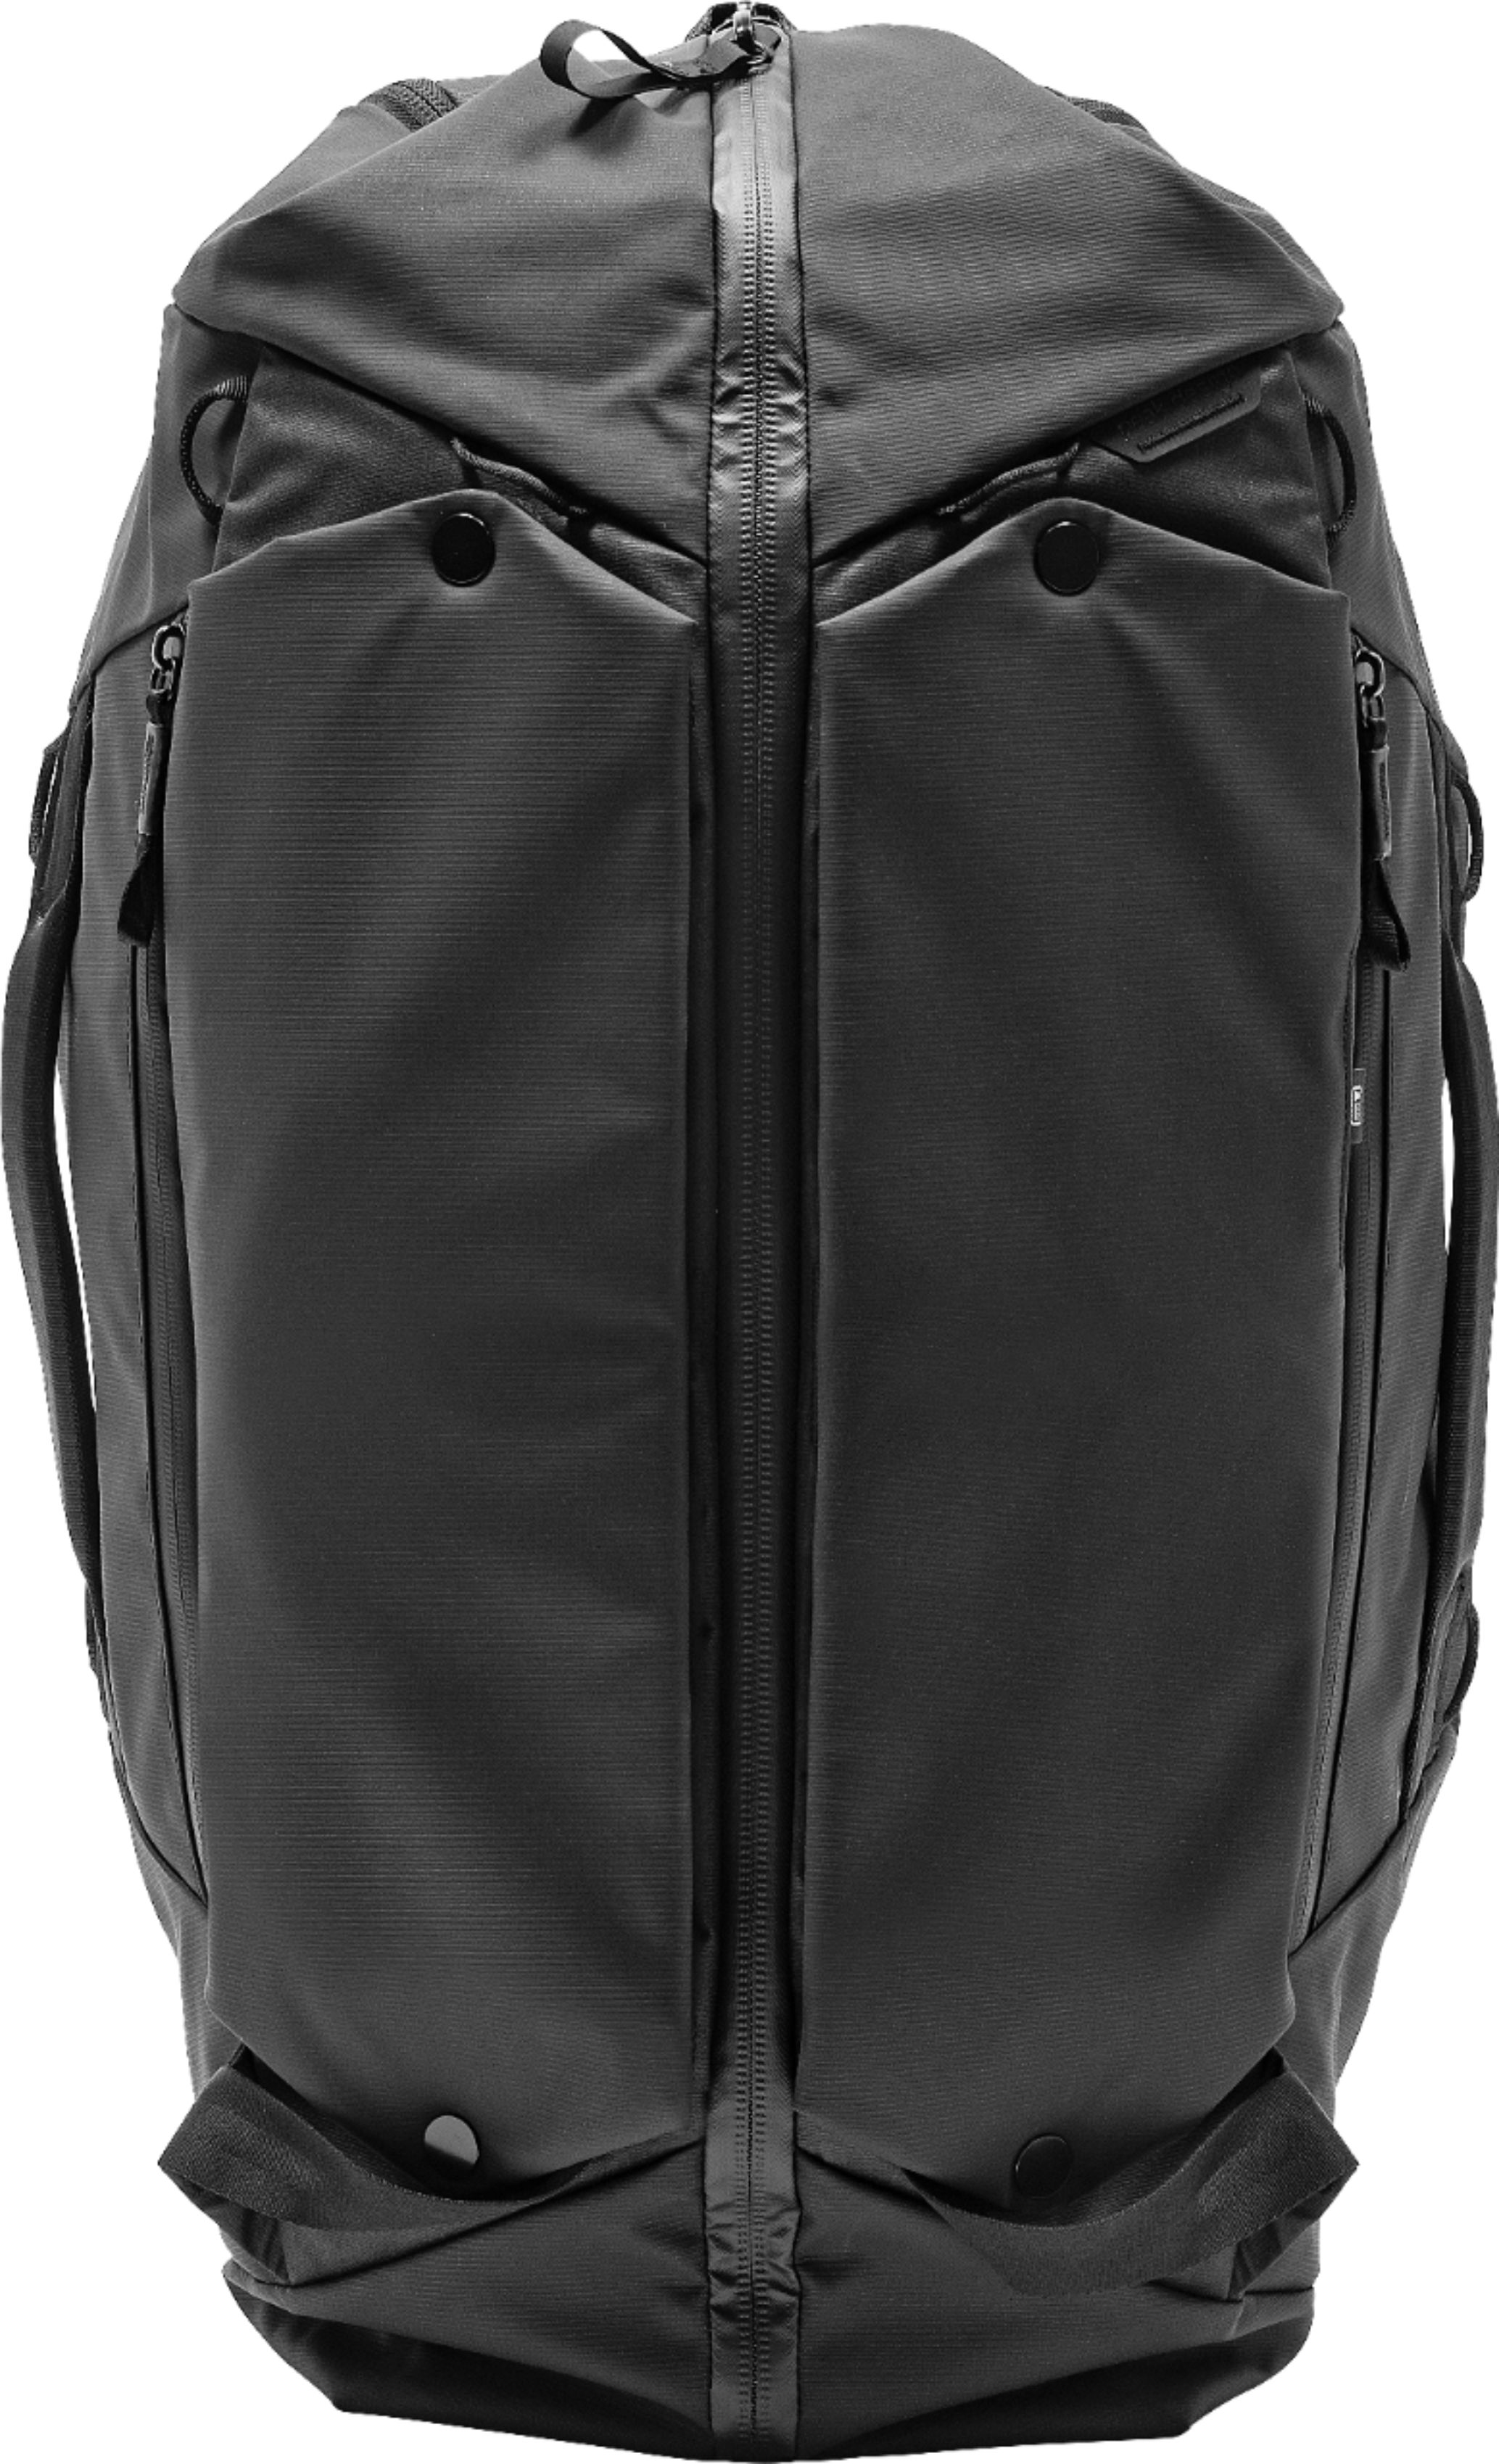 Angle View: Peak Design - Shoulder Bag for 13" Laptop - Black